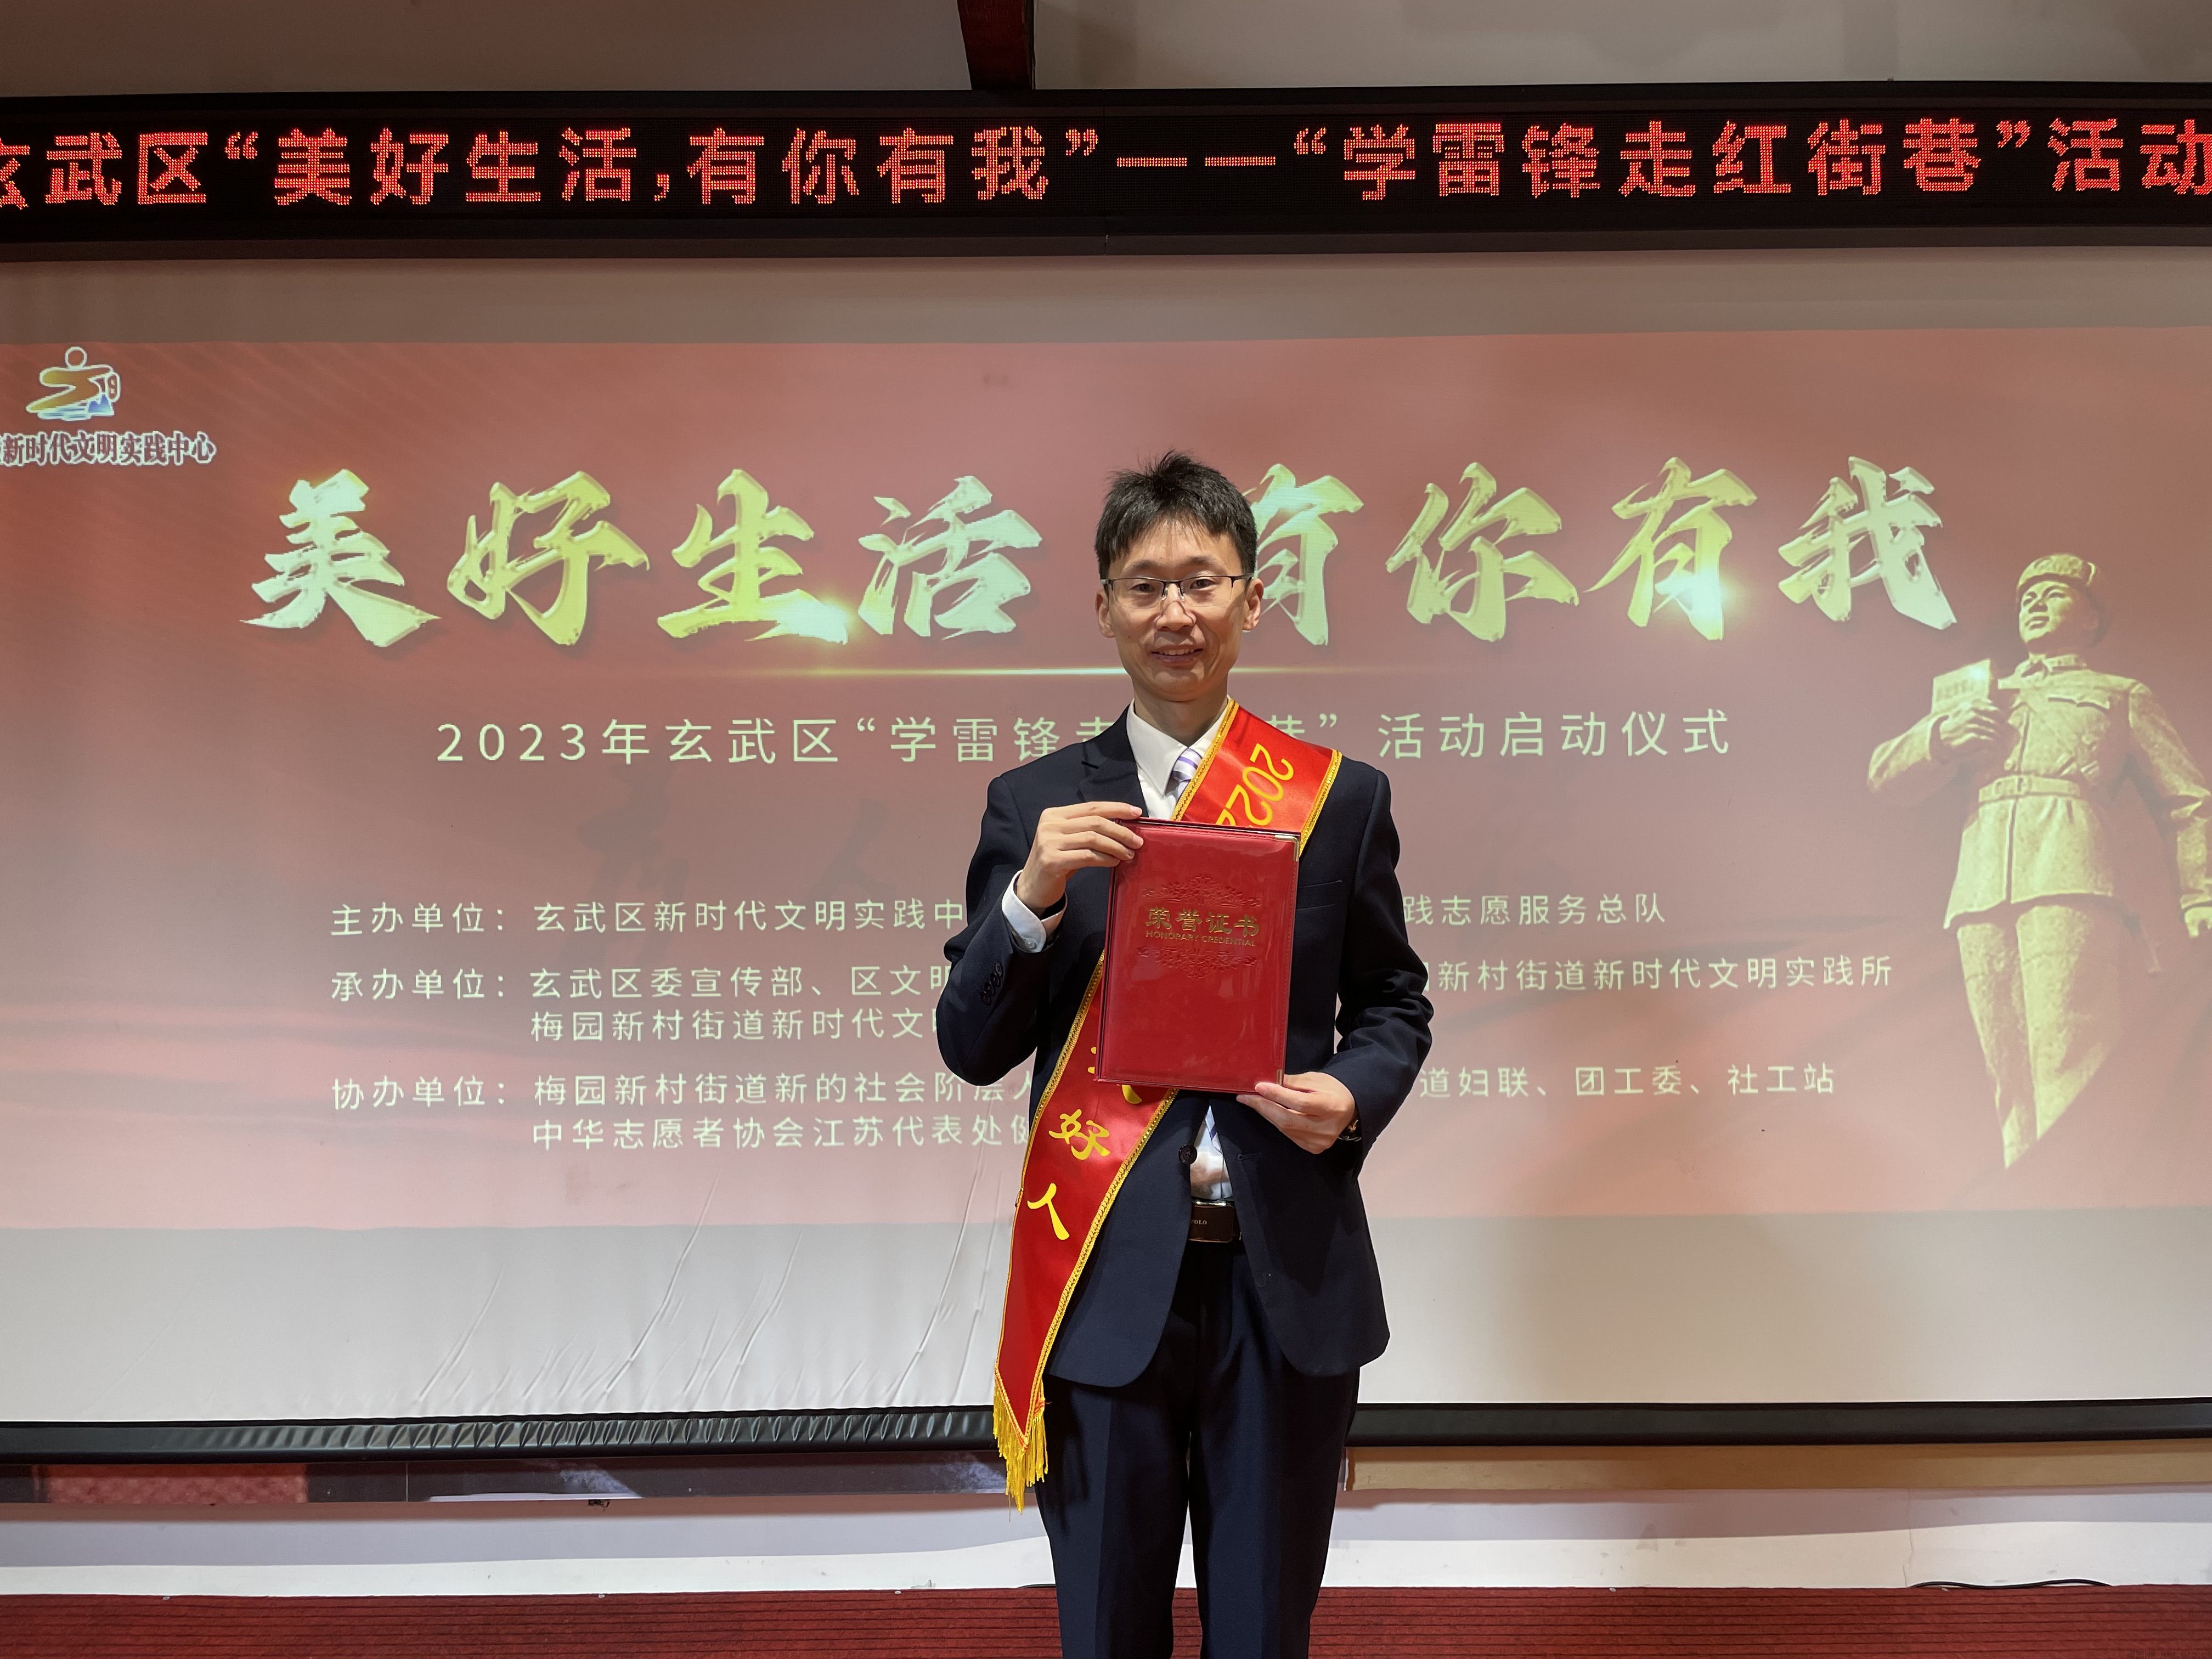 【新闻快报】俞晓阳律师 获南京市文明办评选的“玄武好人”称号